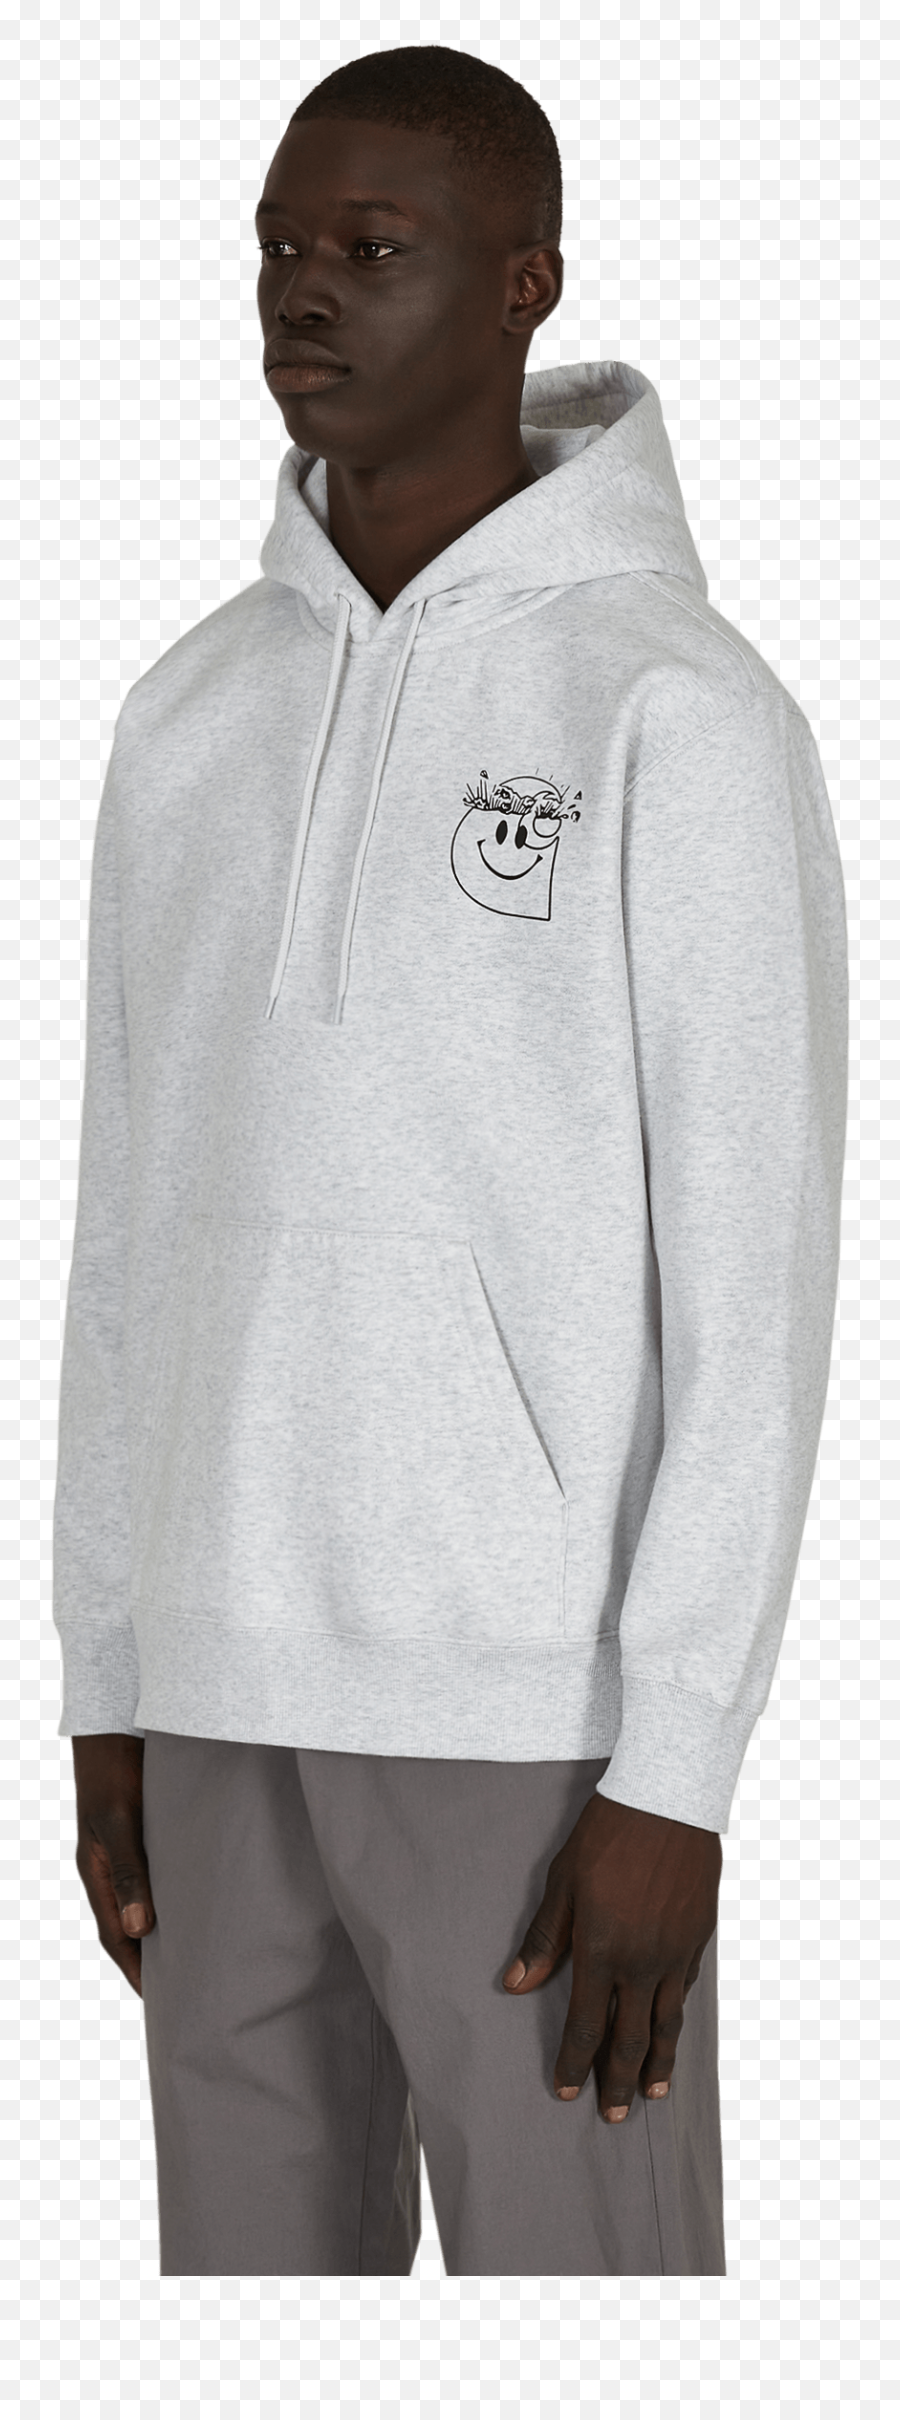 Carhartt Wip Smiley Hooded Sweatshirt - Hooded Emoji,Sweater Black Emoticon